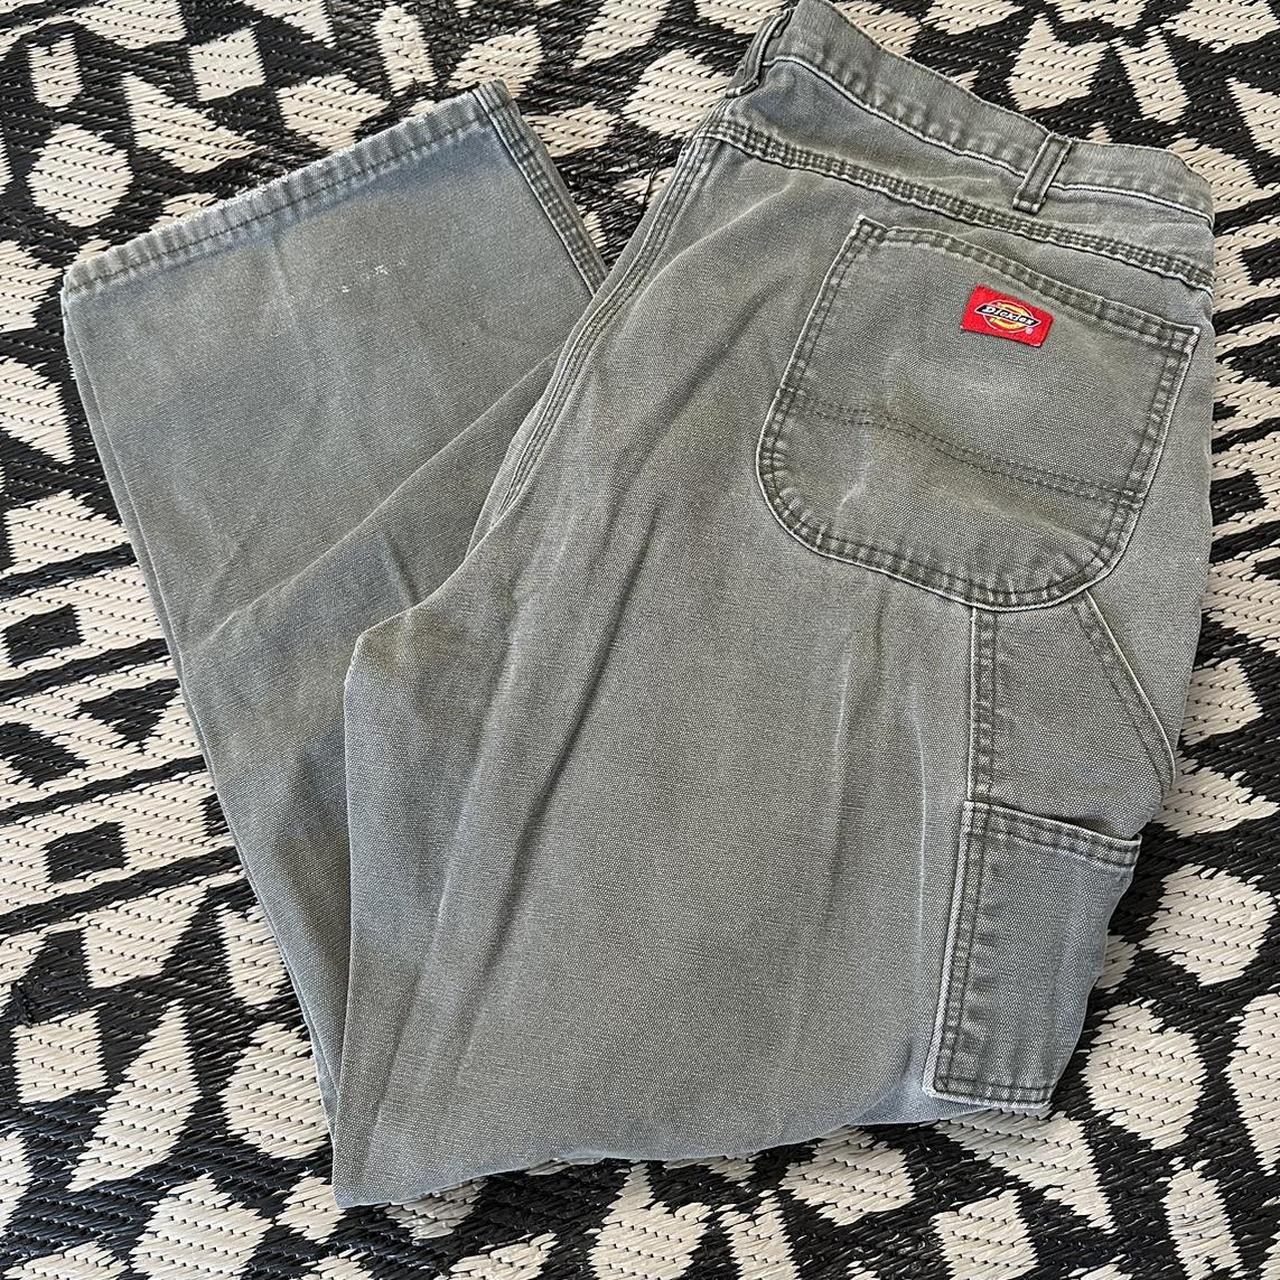 Vintage 90d grey dickies carpenter pants 42x30 - Depop